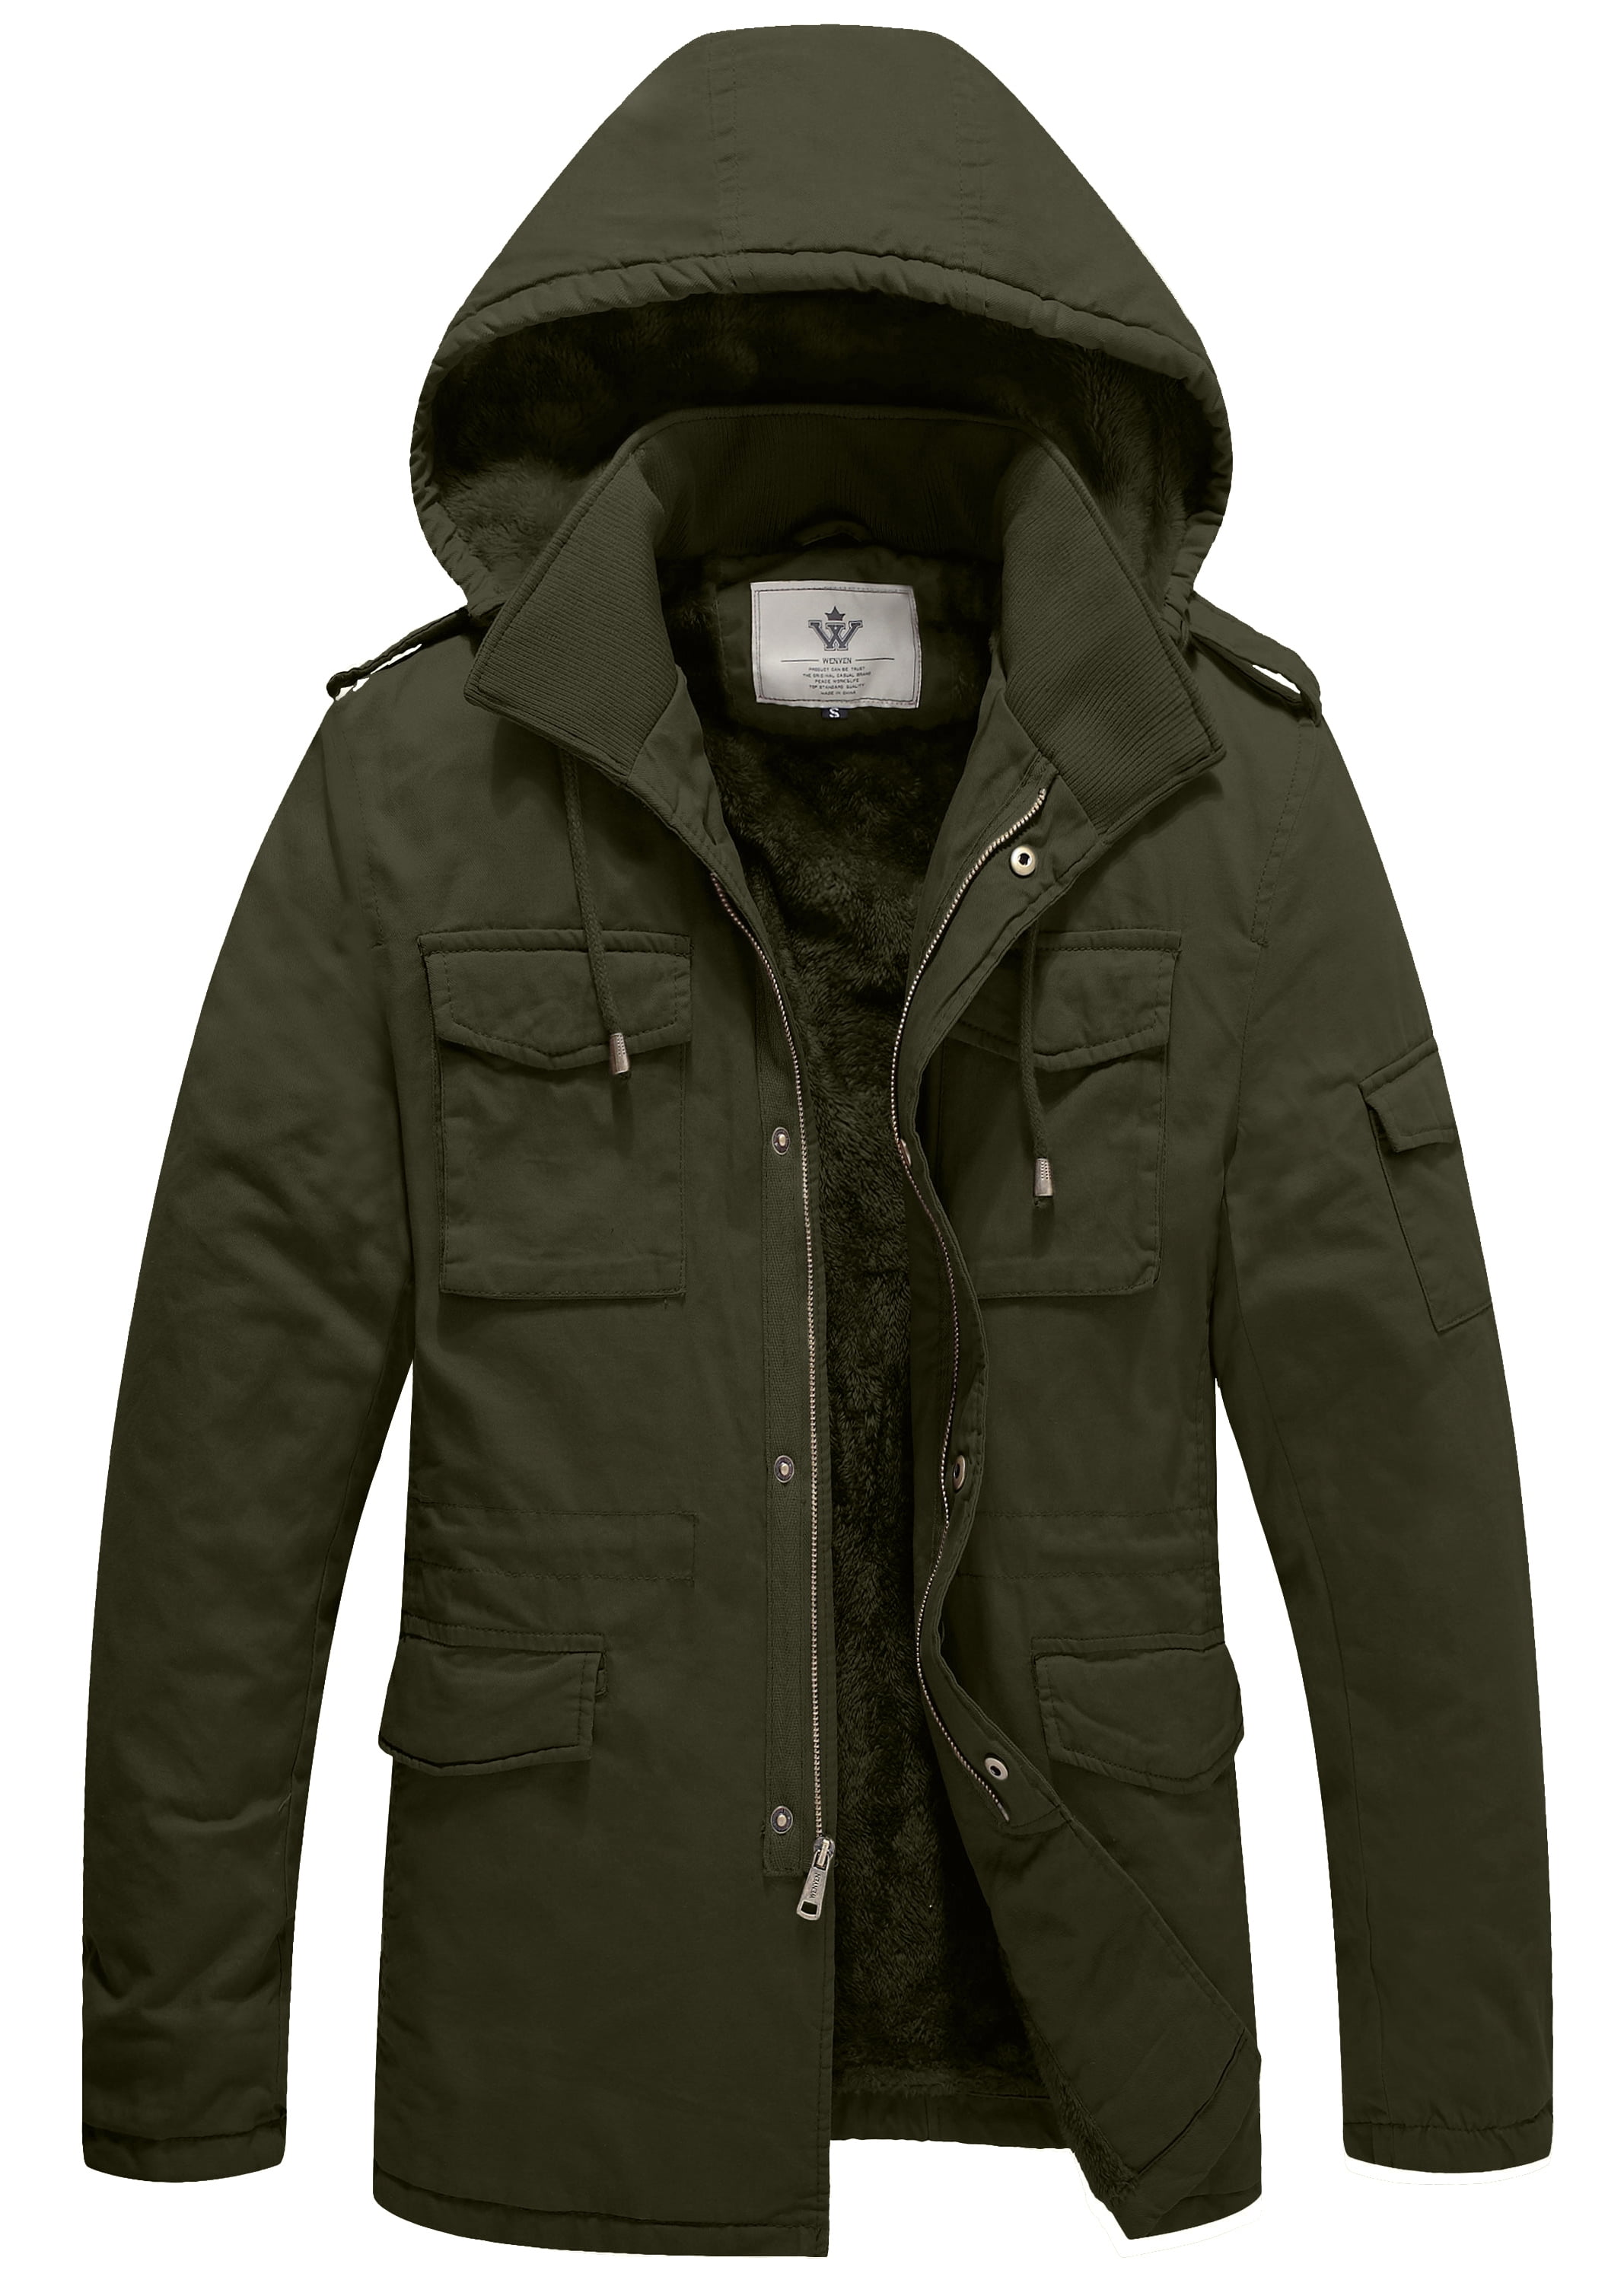 WenVen Men's Winter Fleece Jacket Hooded Thicken Military Style Warm Coat 